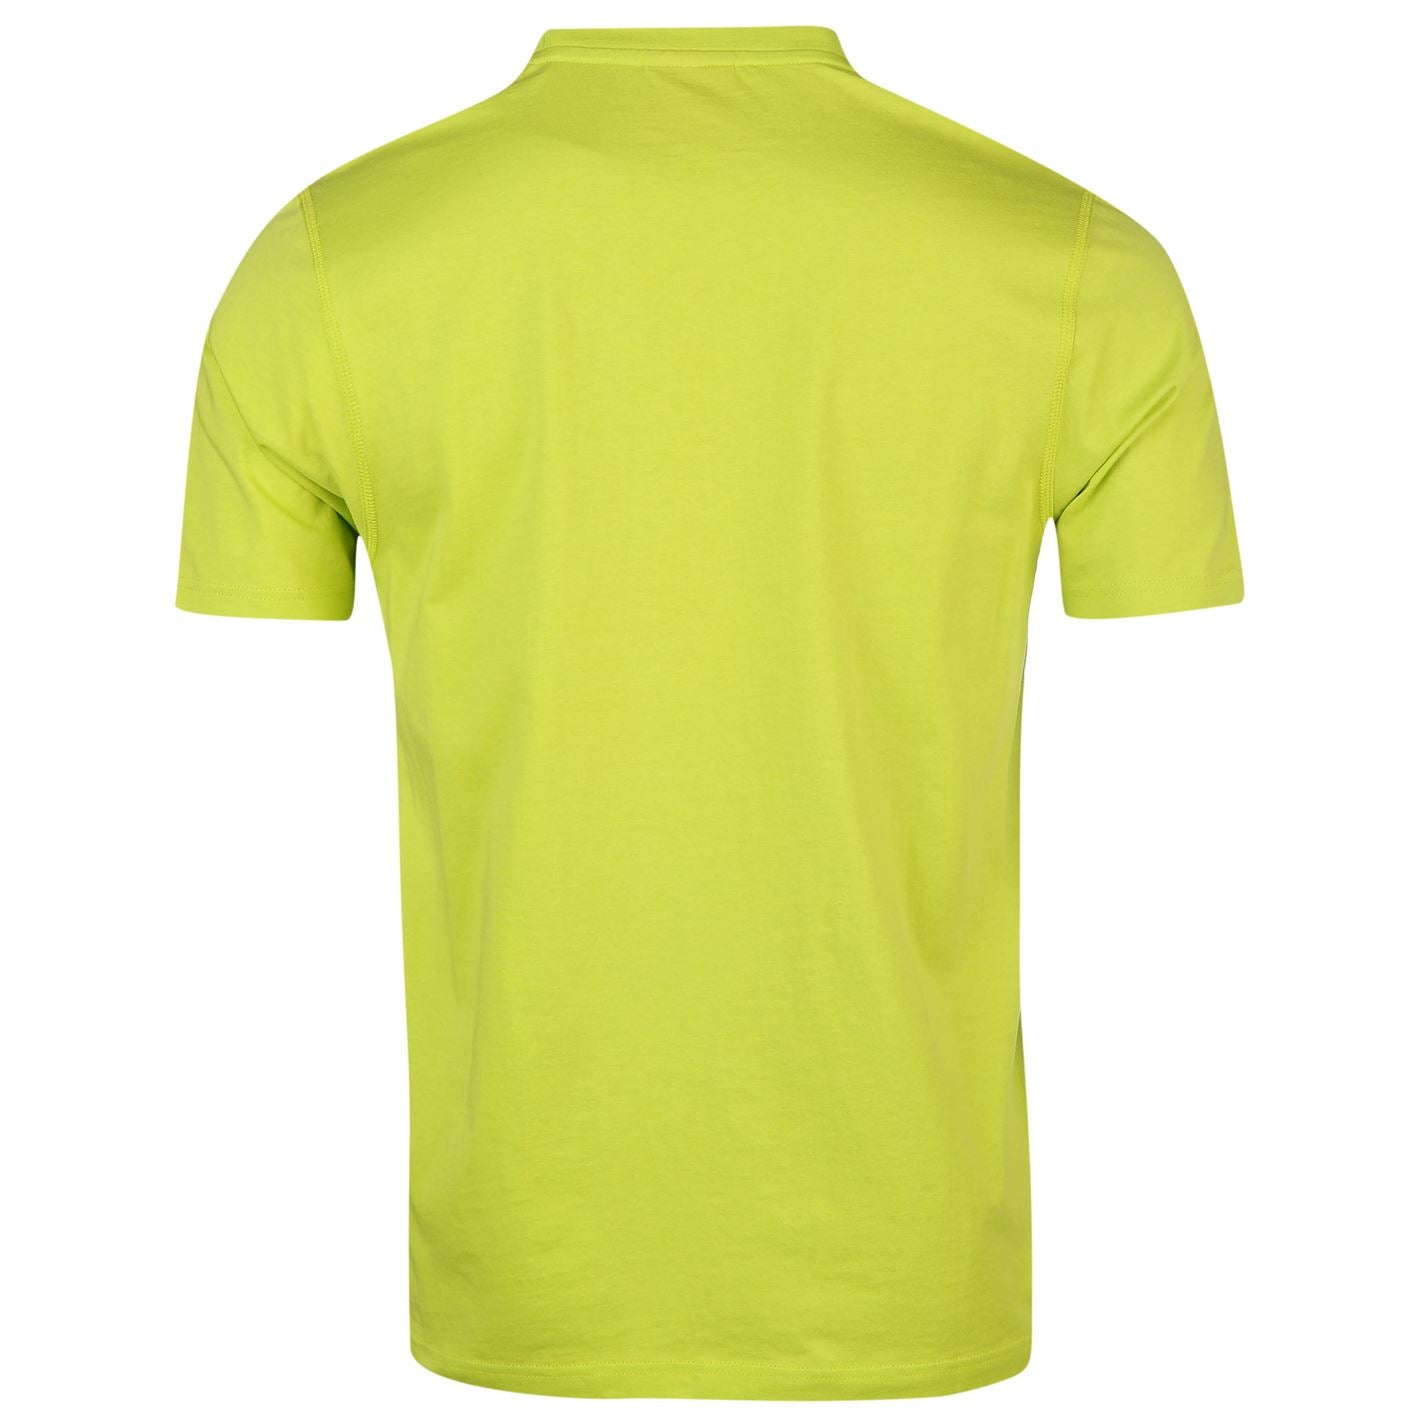 Slazenger Mens Plain T Shirt Crew Neck Tee Top Short Sleeve Lightweight Cotton